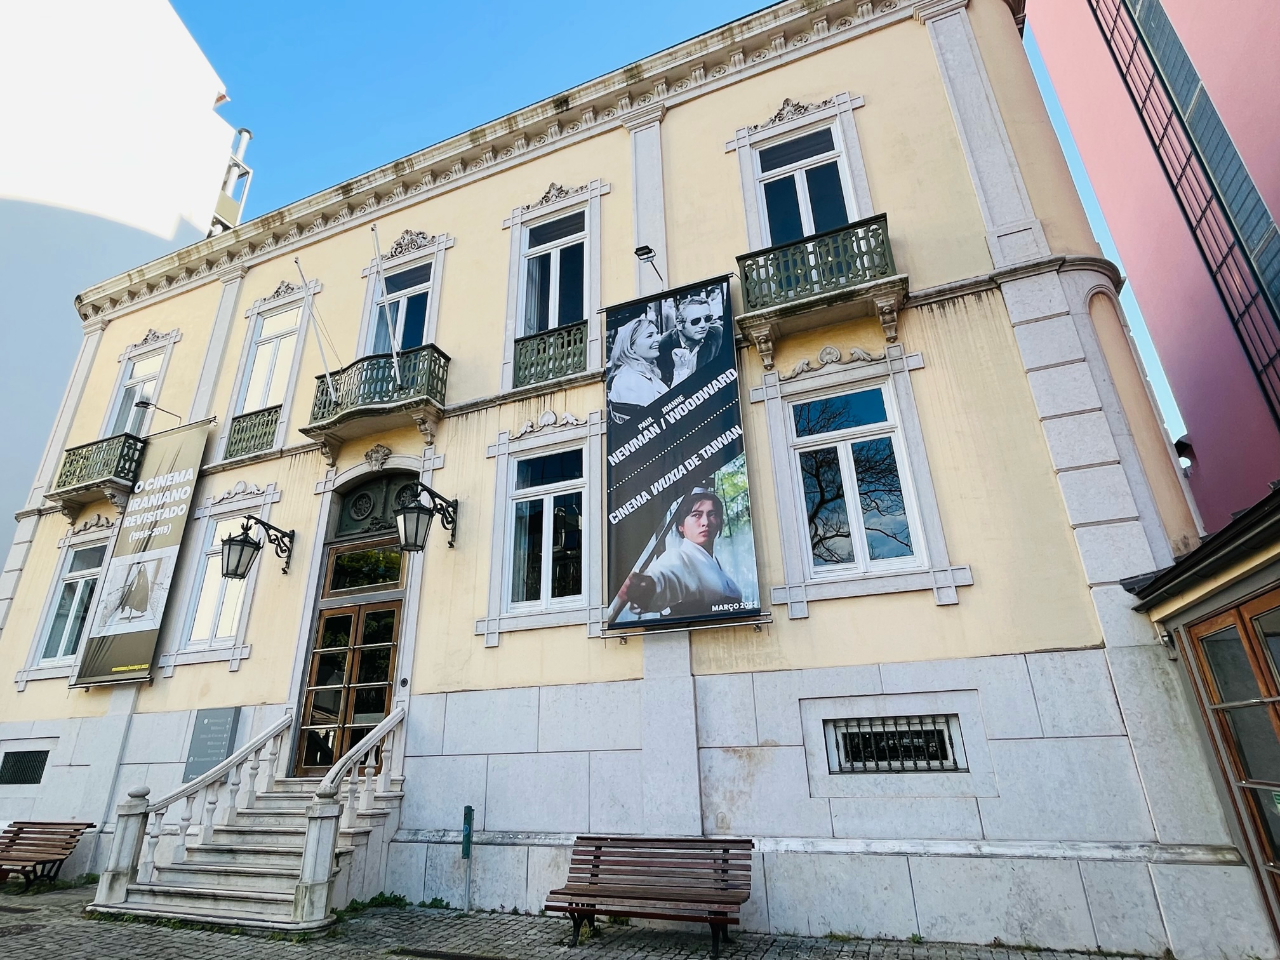 葡萄牙電影博物館外牆懸掛的大型電影宣傳掛板